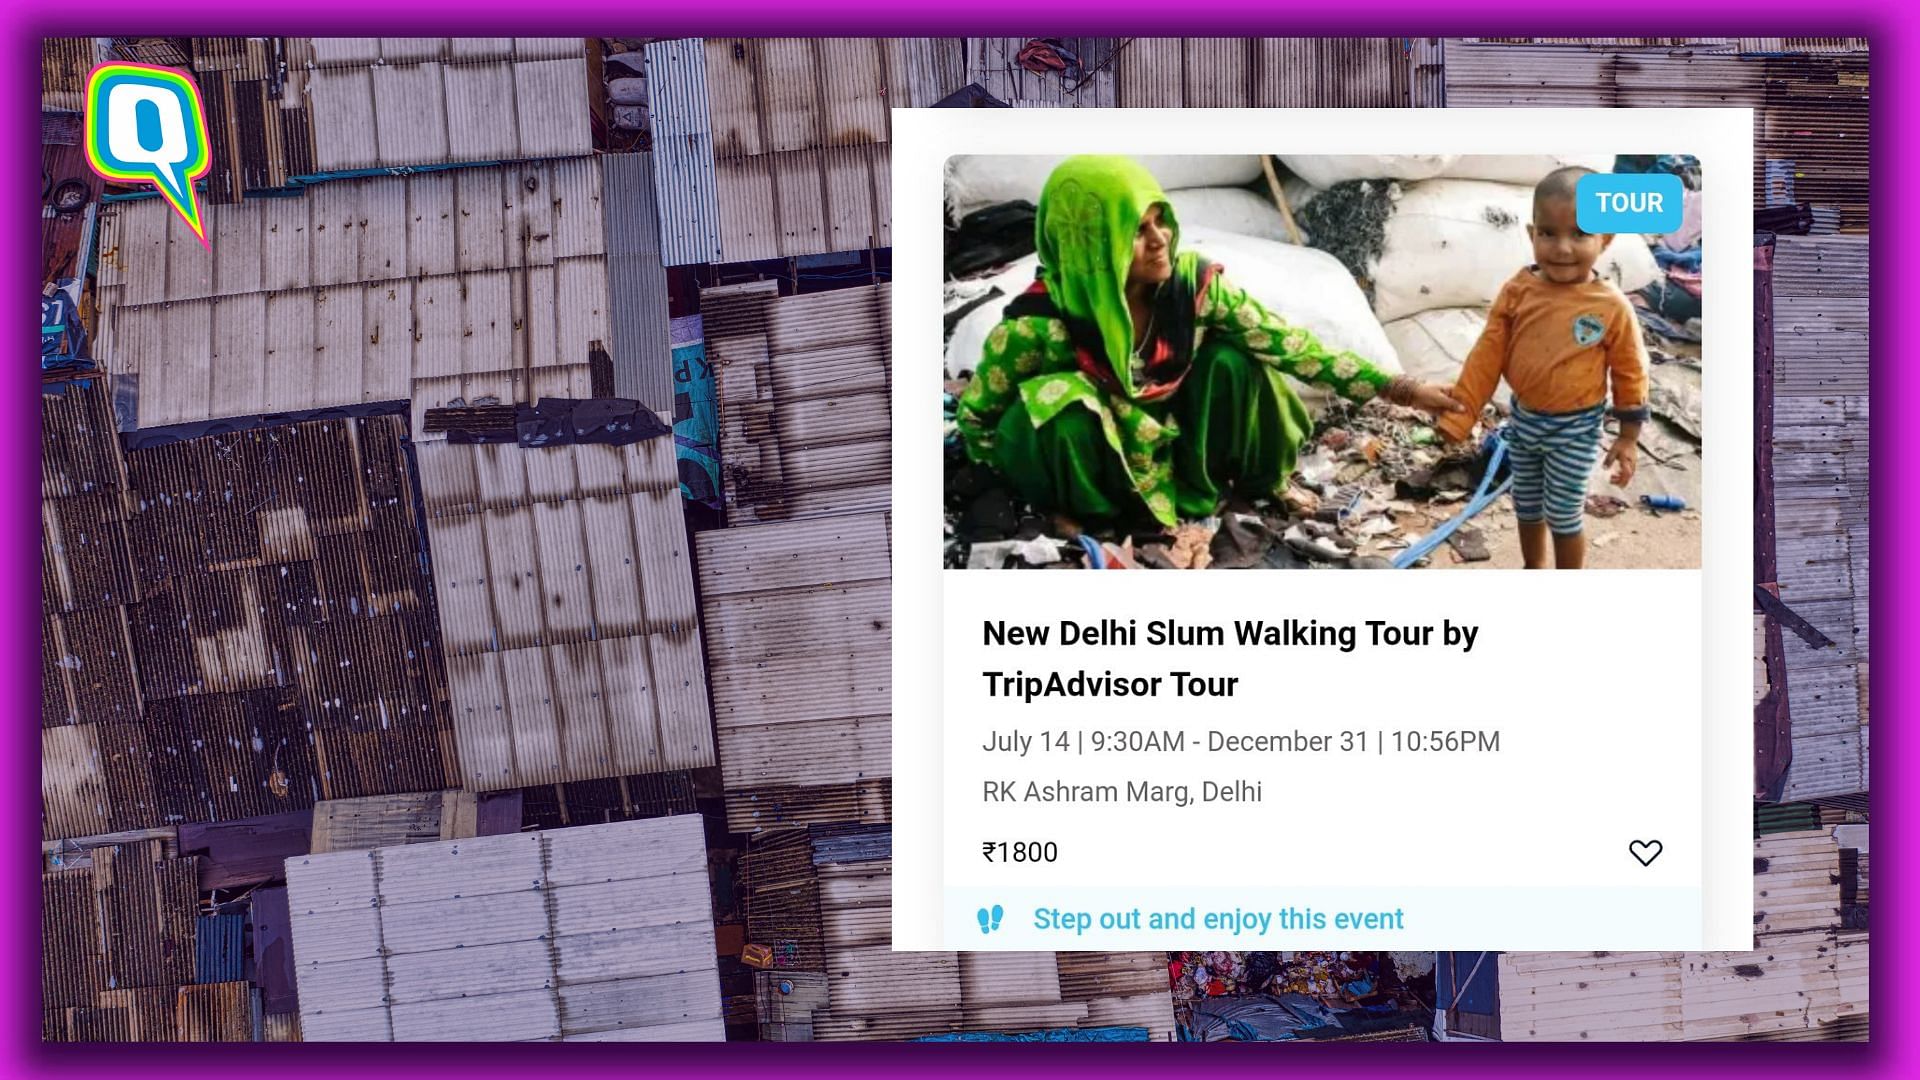 <div class="paragraphs"><p>New Delhi Slum Walking Tour by Tripadvisor gets flak online.</p></div>